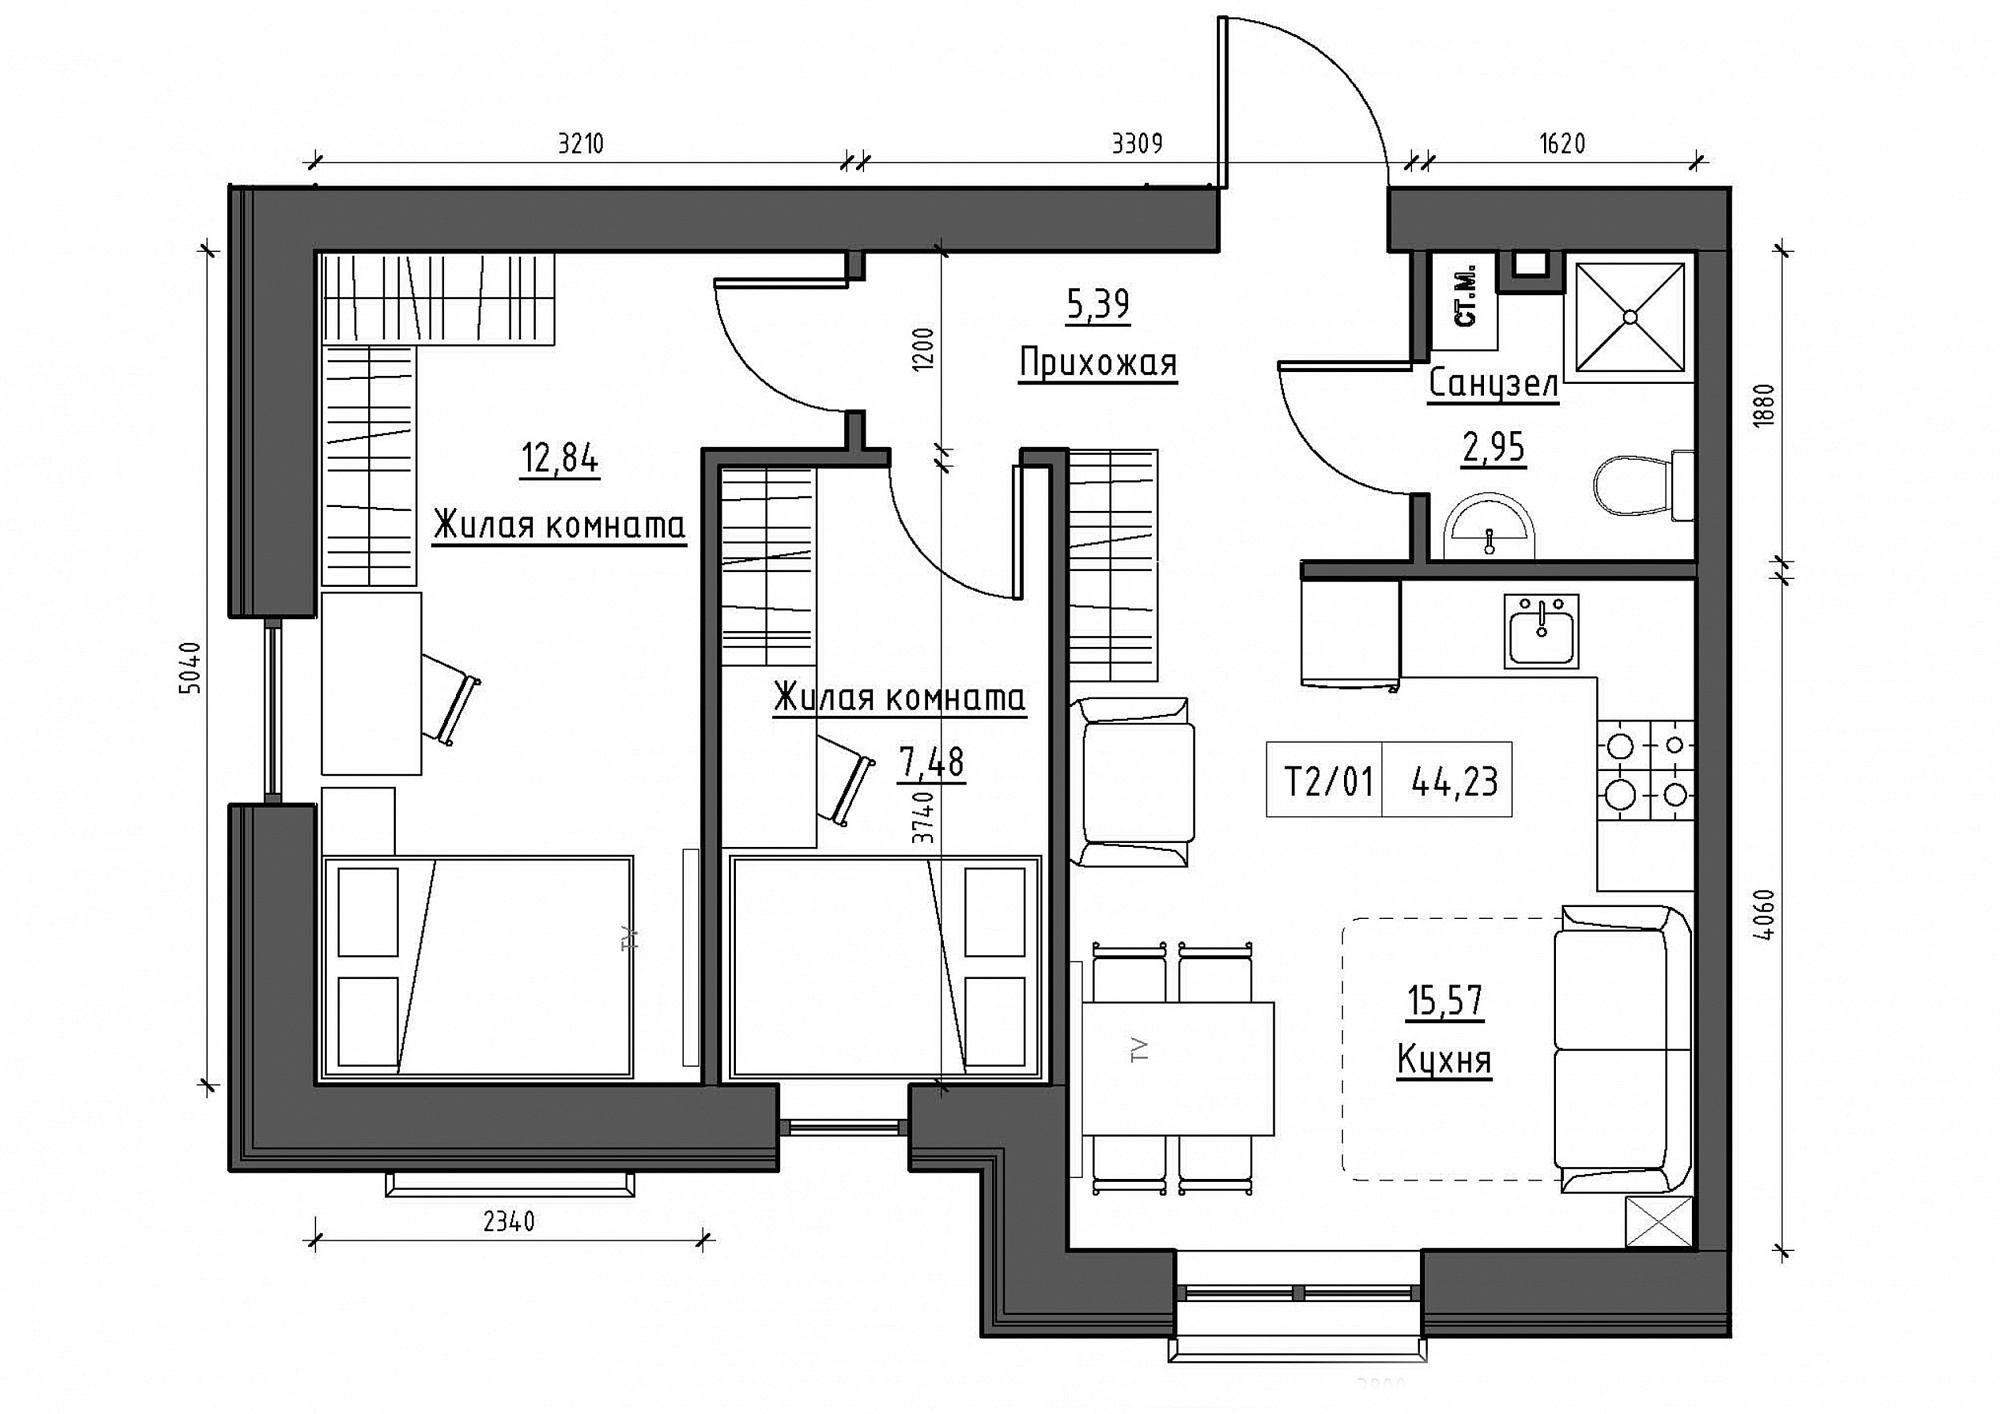 Планування 2-к квартира площею 44.23м2, KS-012-01/0008.